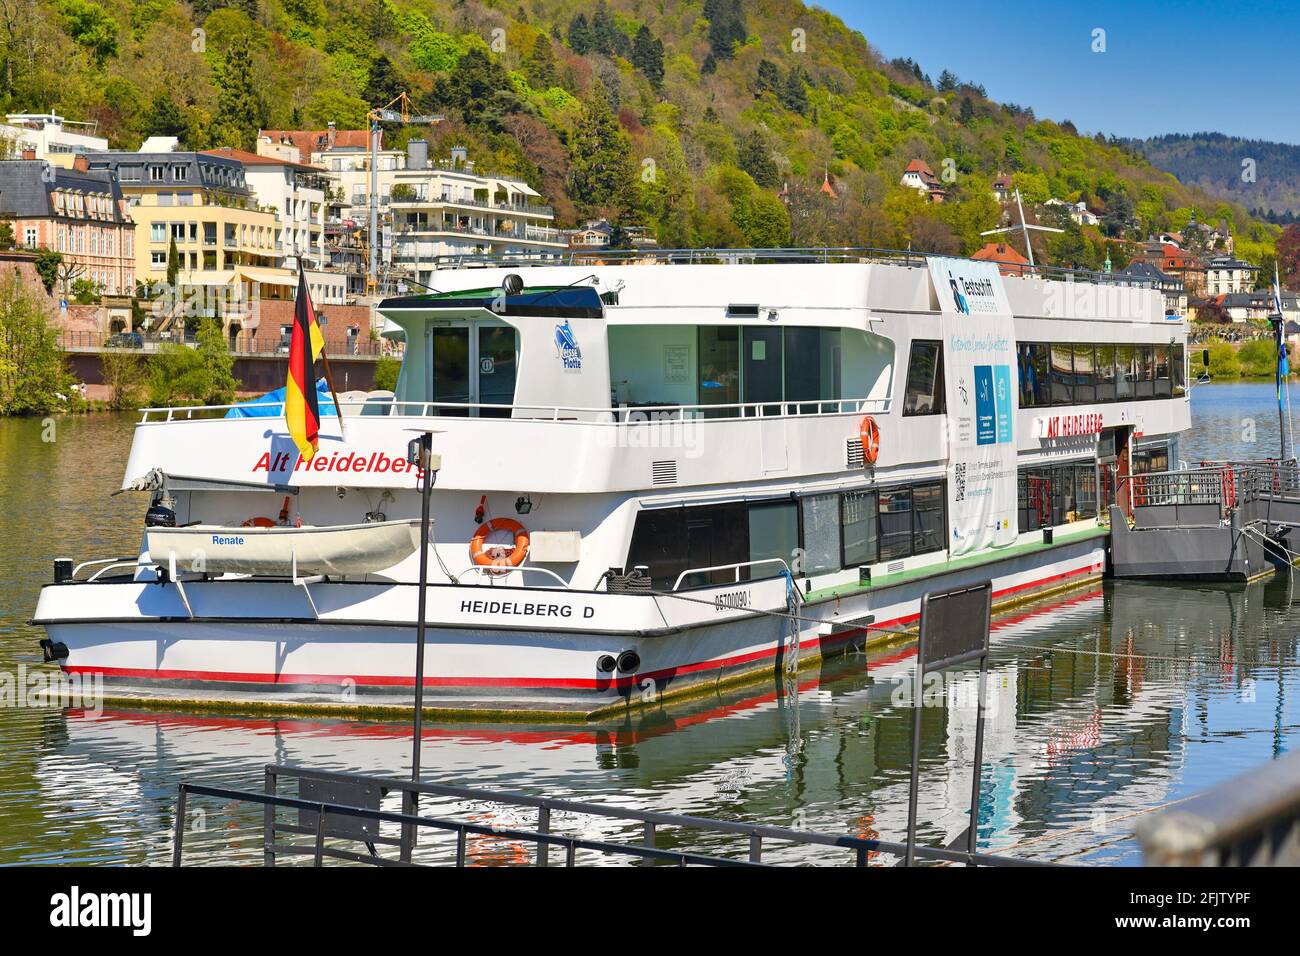 Heidelberg, Deutschland - April 2021: Corona-Virus-Teststation mit dem Namen „Testschiff“ auf dem Boot, die kostenlose Schnellantigen-Tests auf dem Neckar anbietet Stockfoto